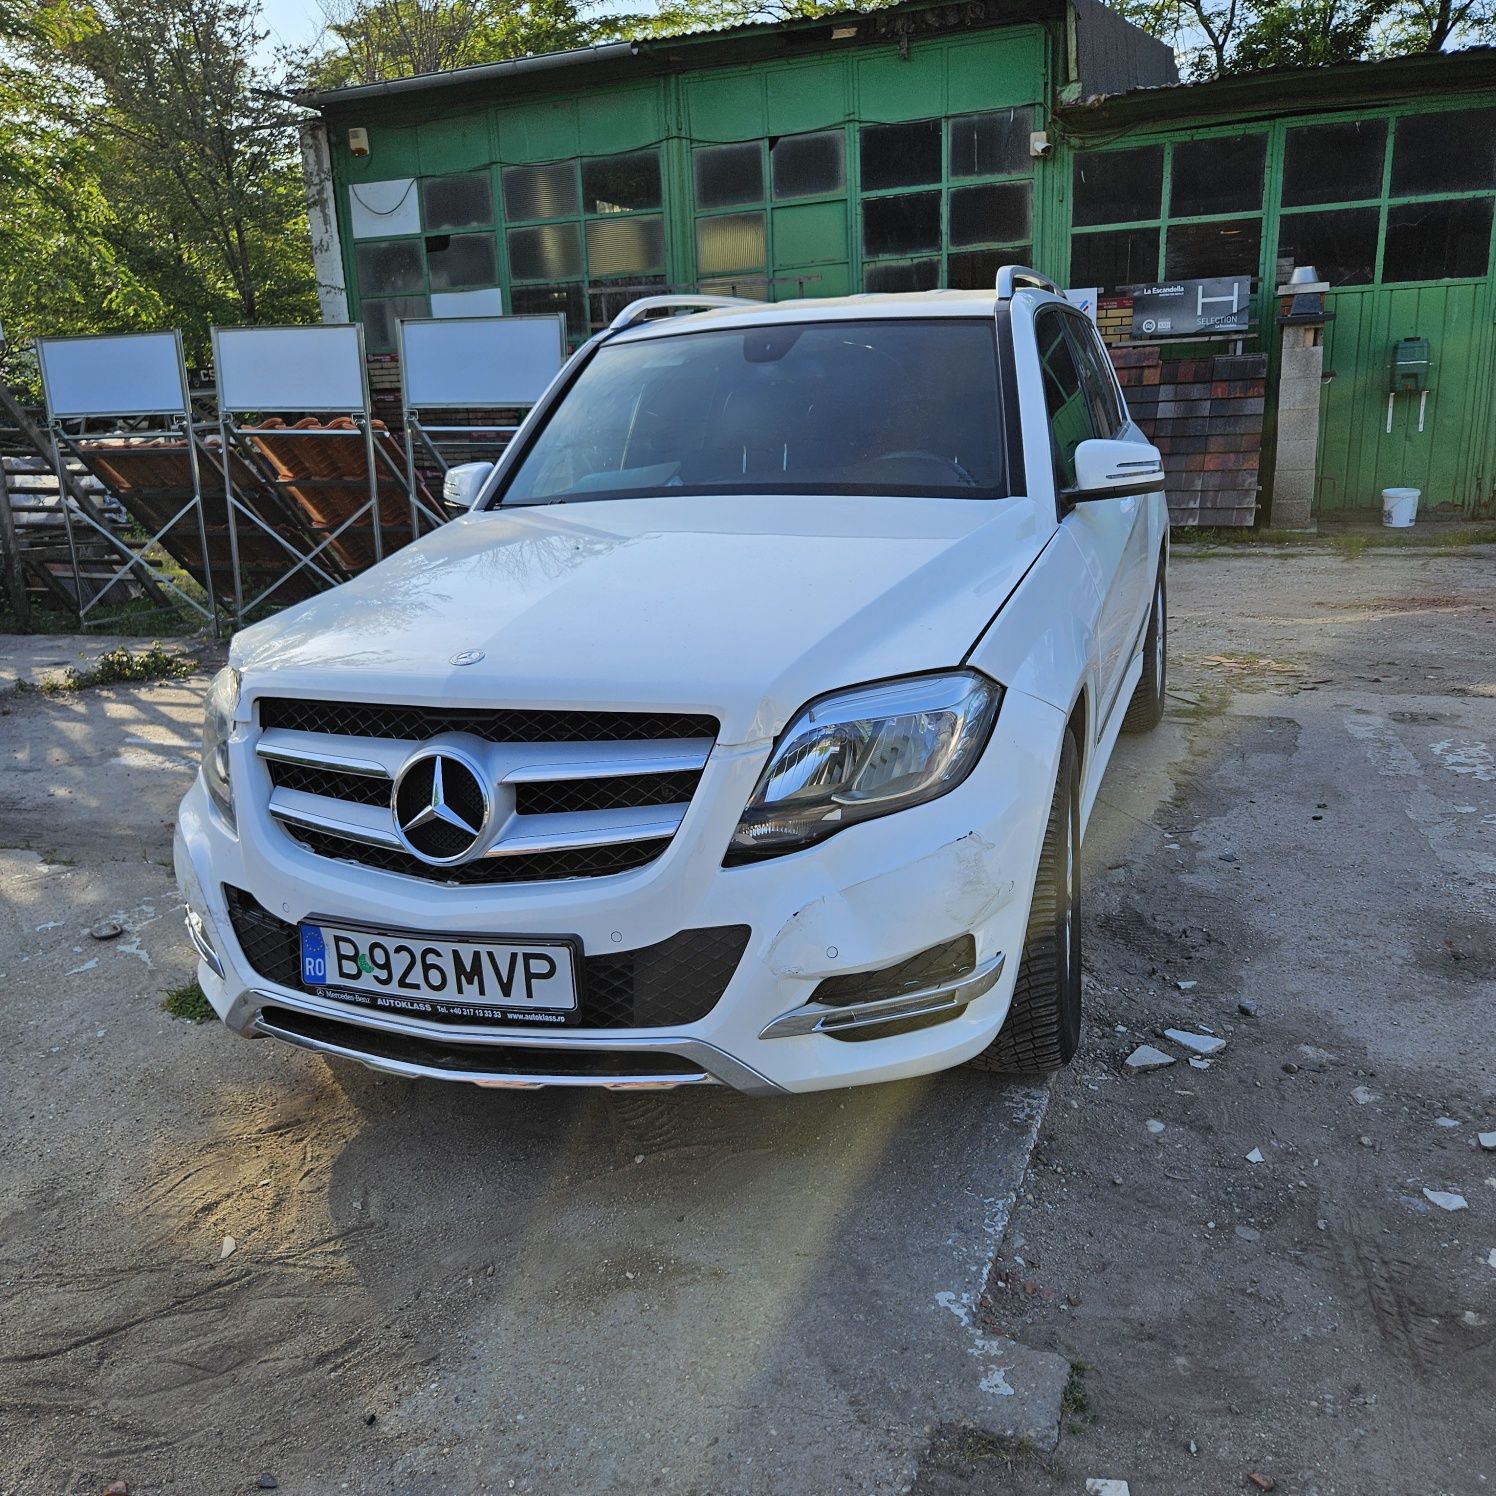 Mercedes Benz GLK 2013 / 144.000 km / facelift/  avariat lovit